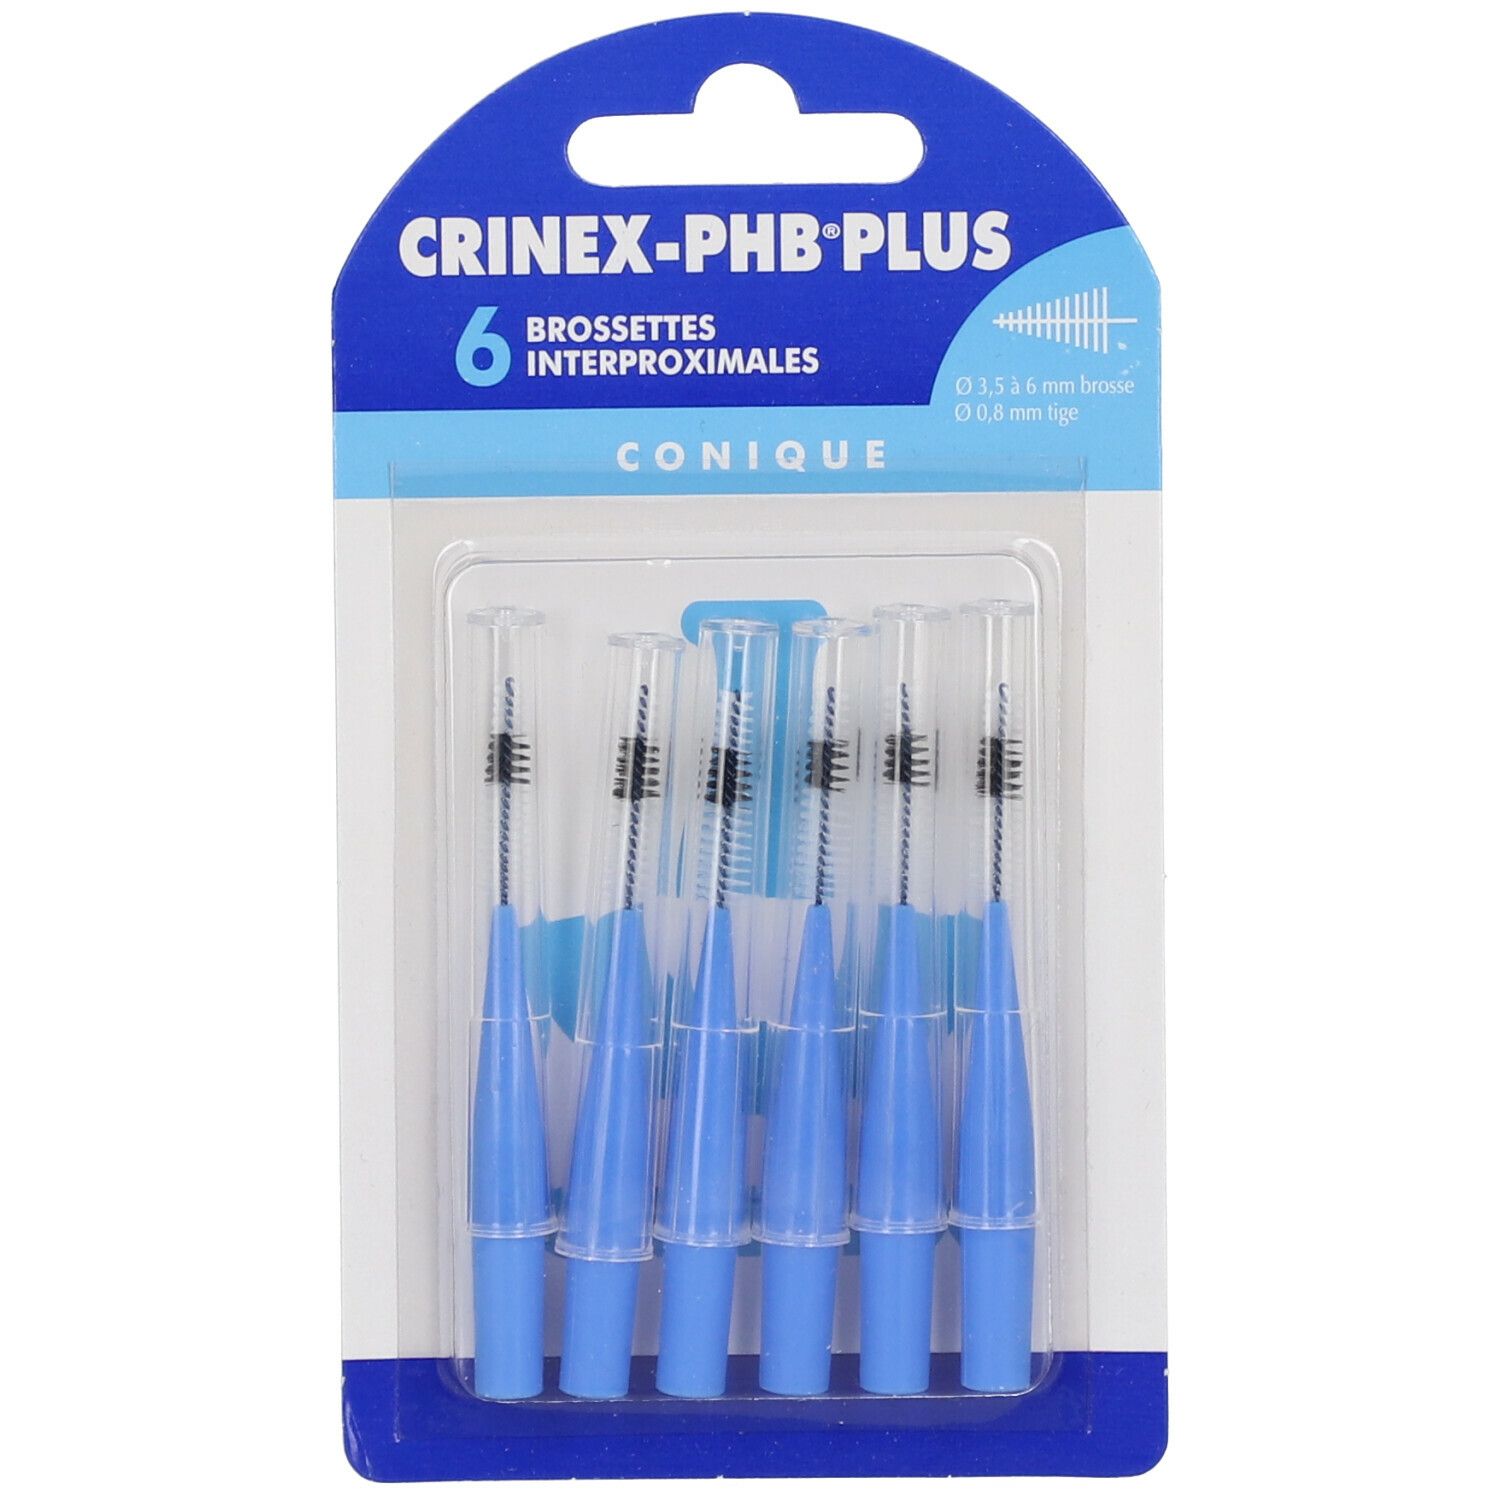 CRINEX-PHB® Plus Brossettes Interproximales Conique